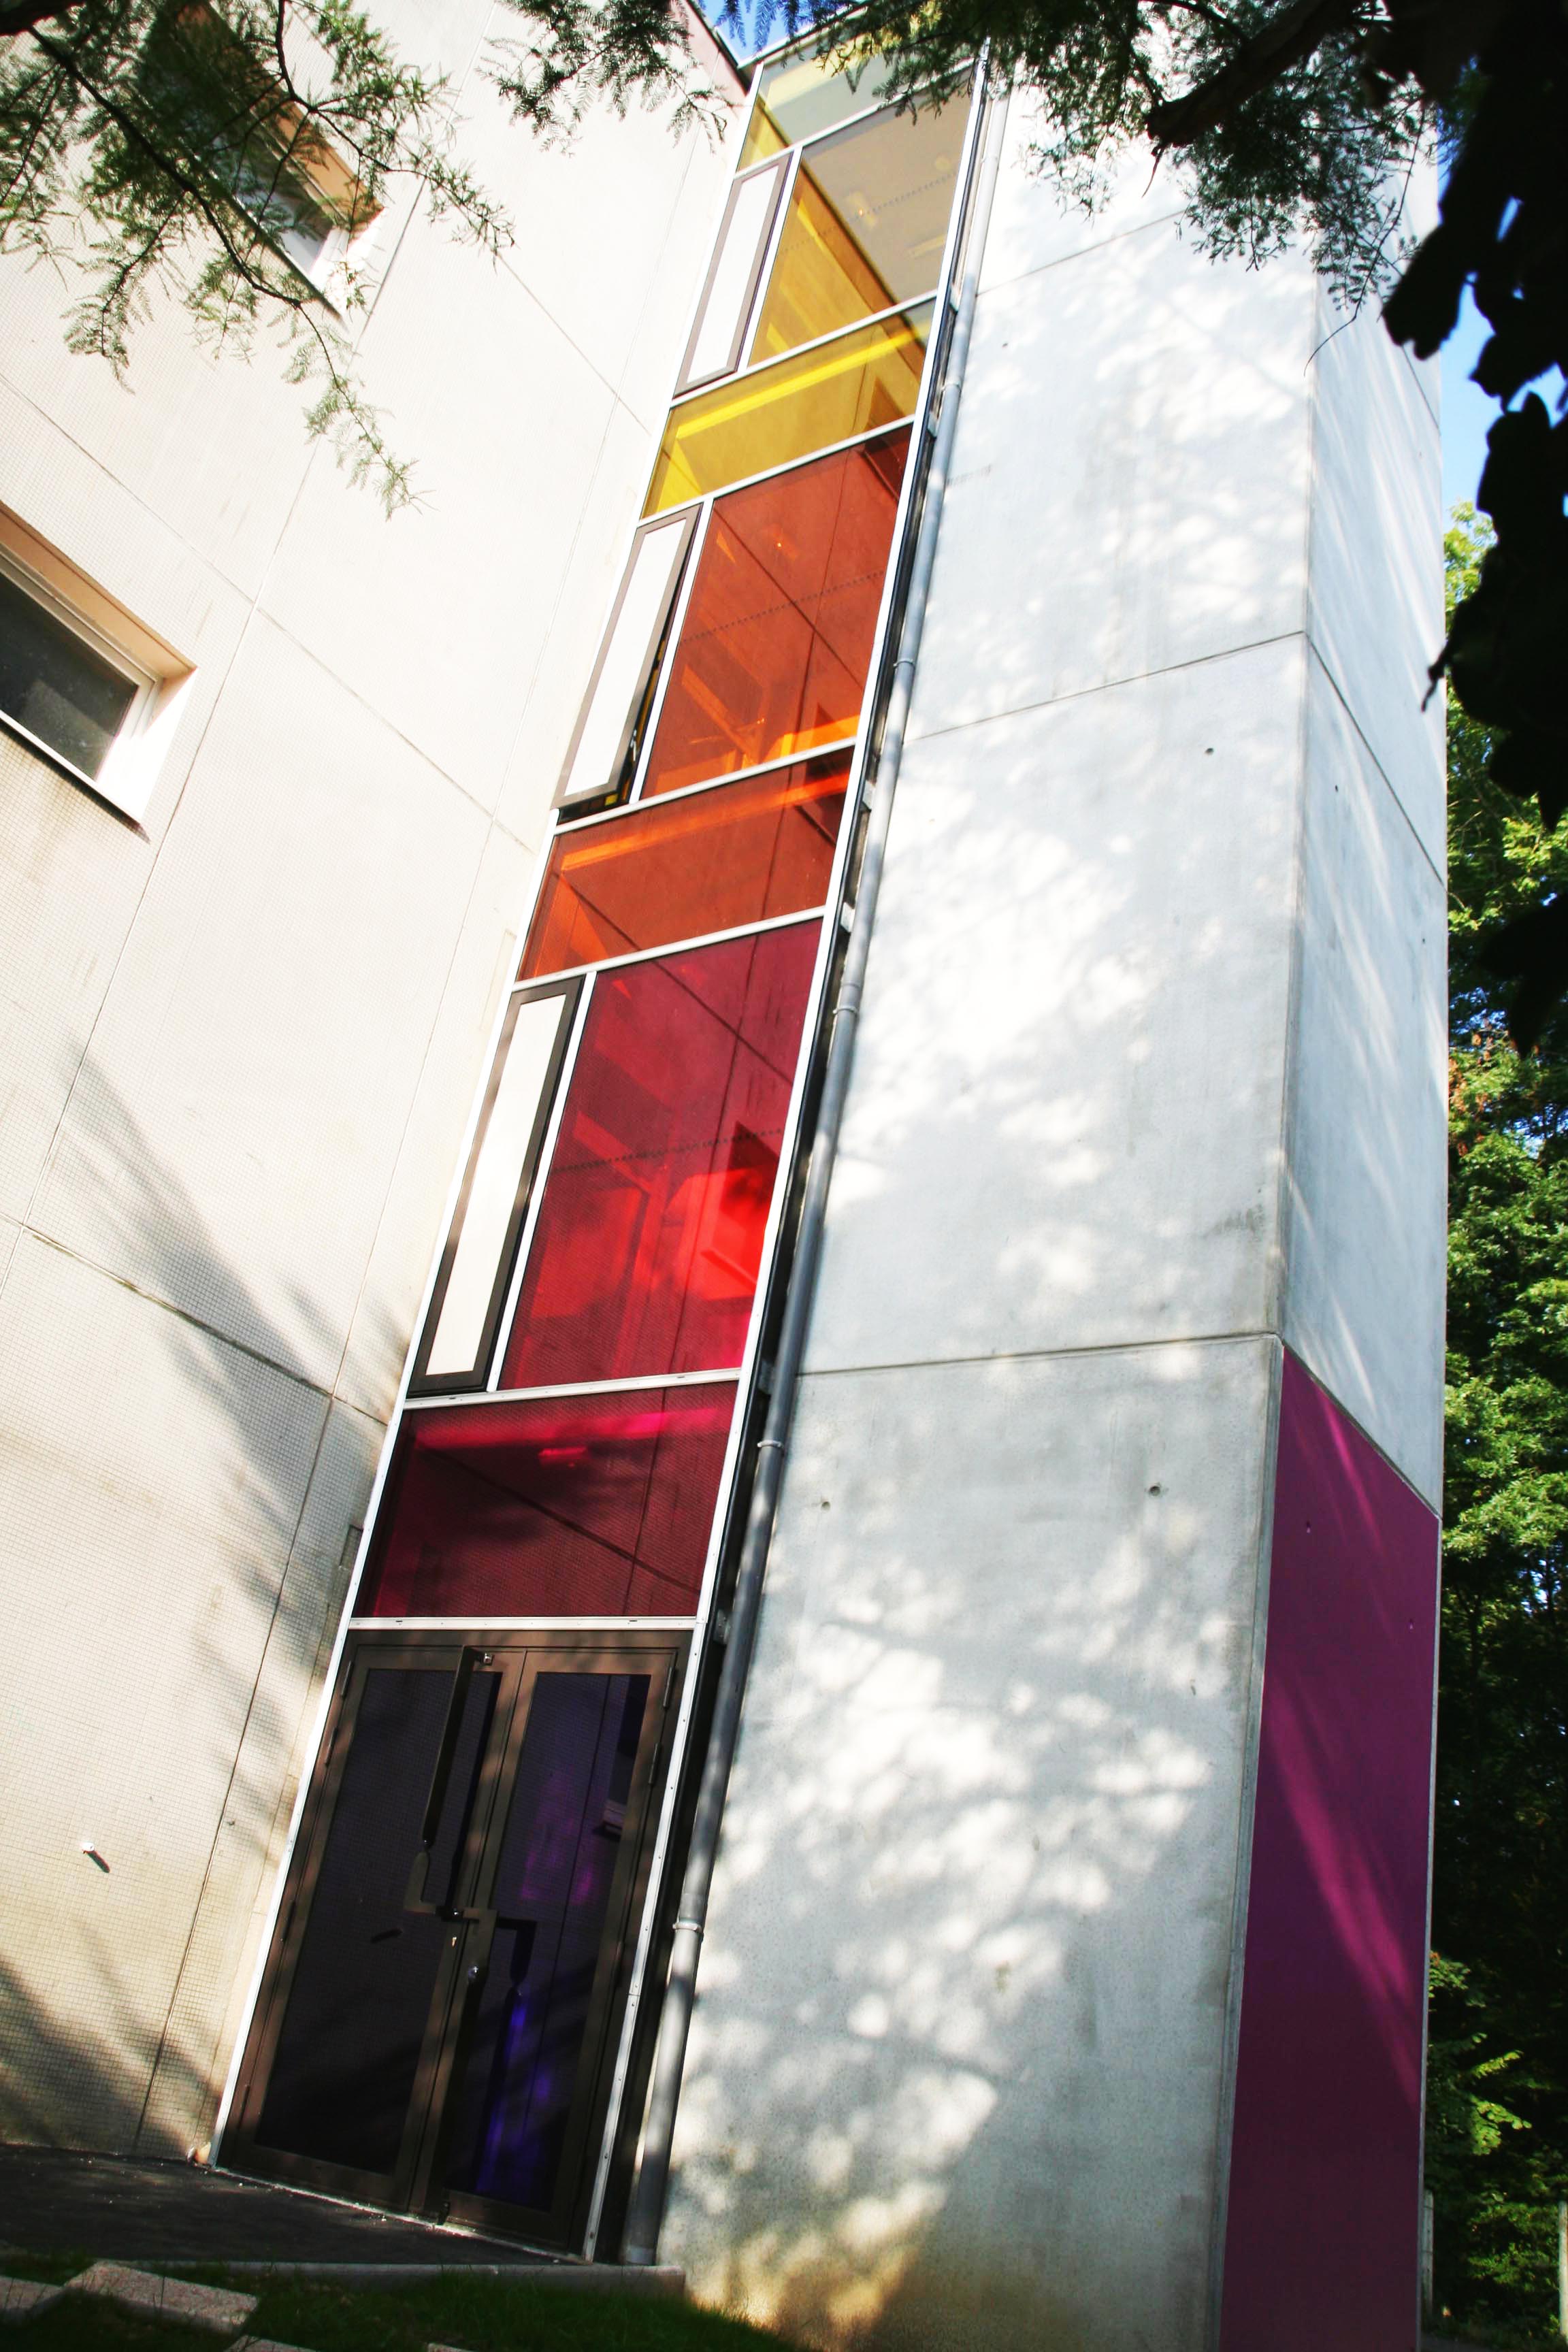 façade bâtiment en verre feuilleté coloré, façade bâtiment en verre feuilleté multicolore